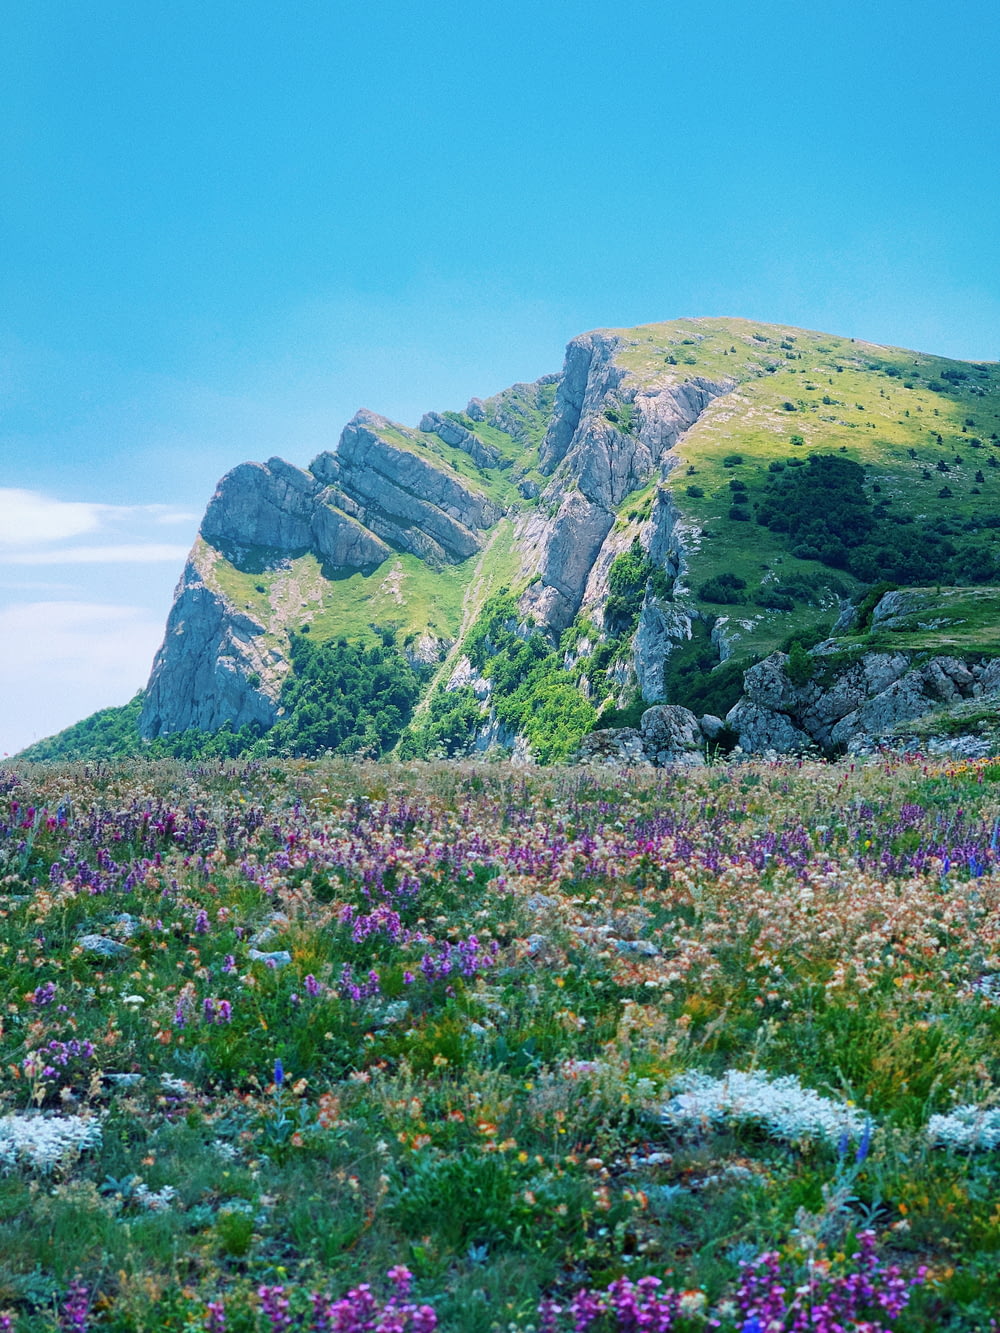 Campo de flores púrpuras cerca de montañas verdes y grises bajo el cielo azul durante el día